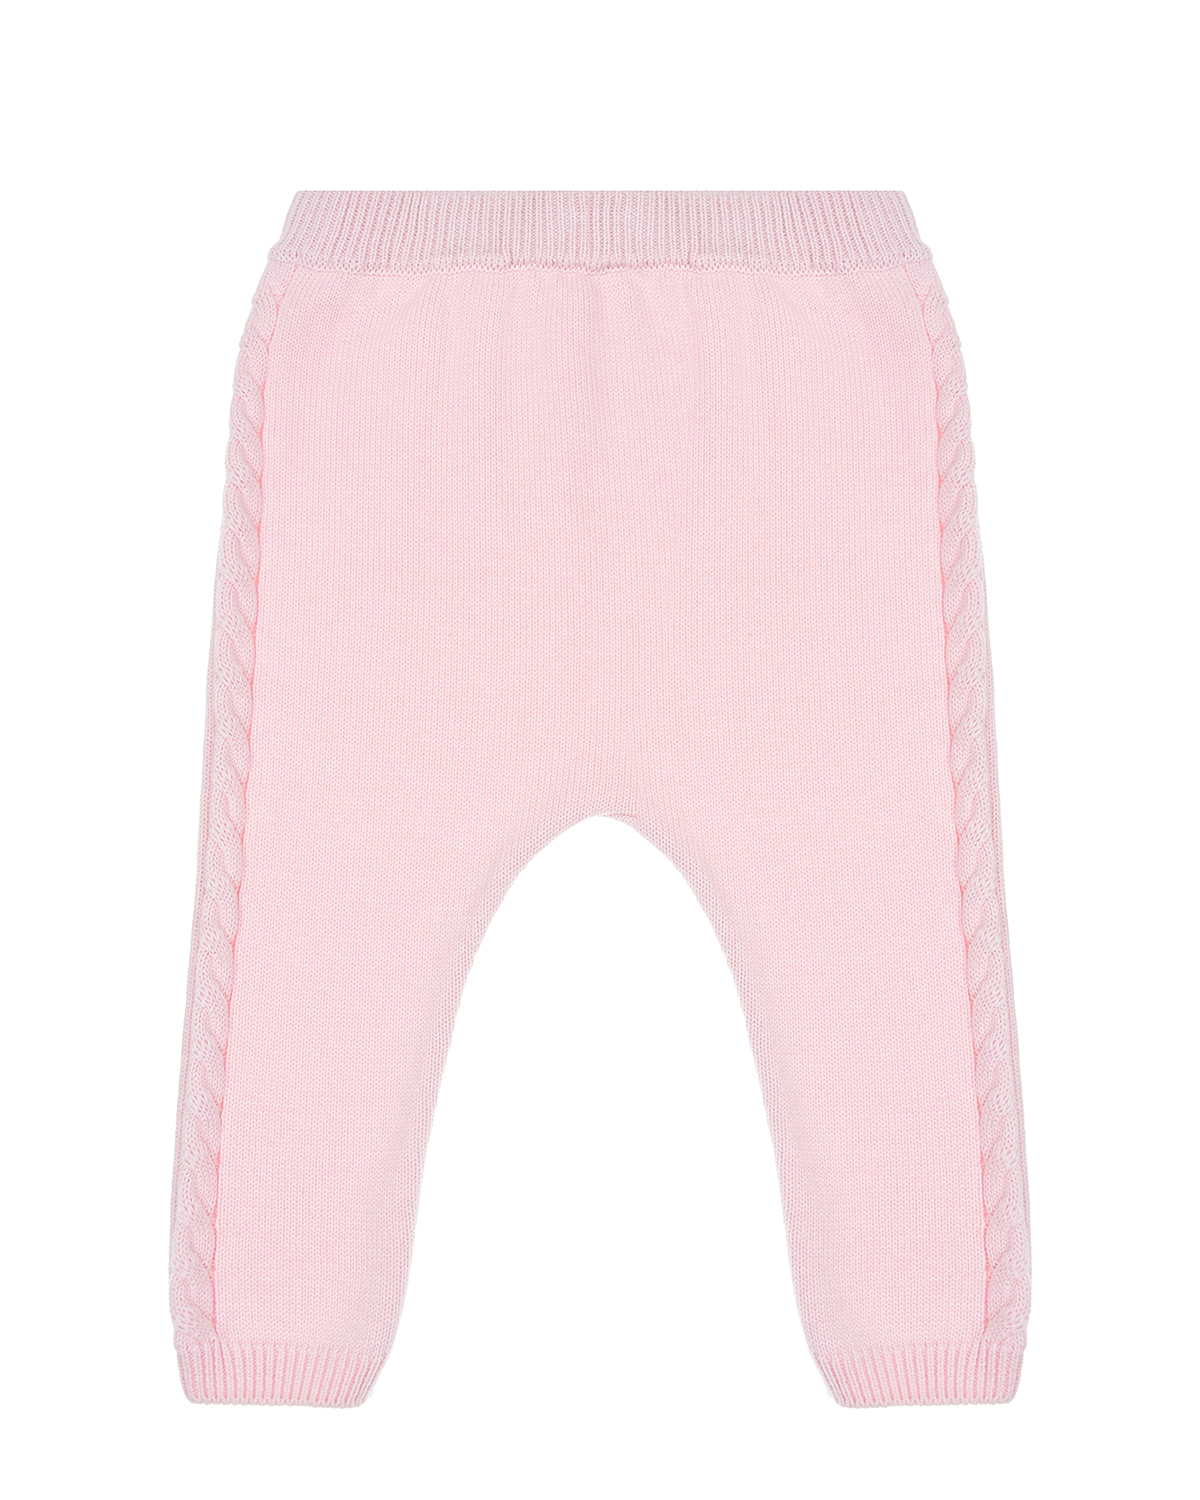 Розовые брюки с лампасами косичкой Fendi детские